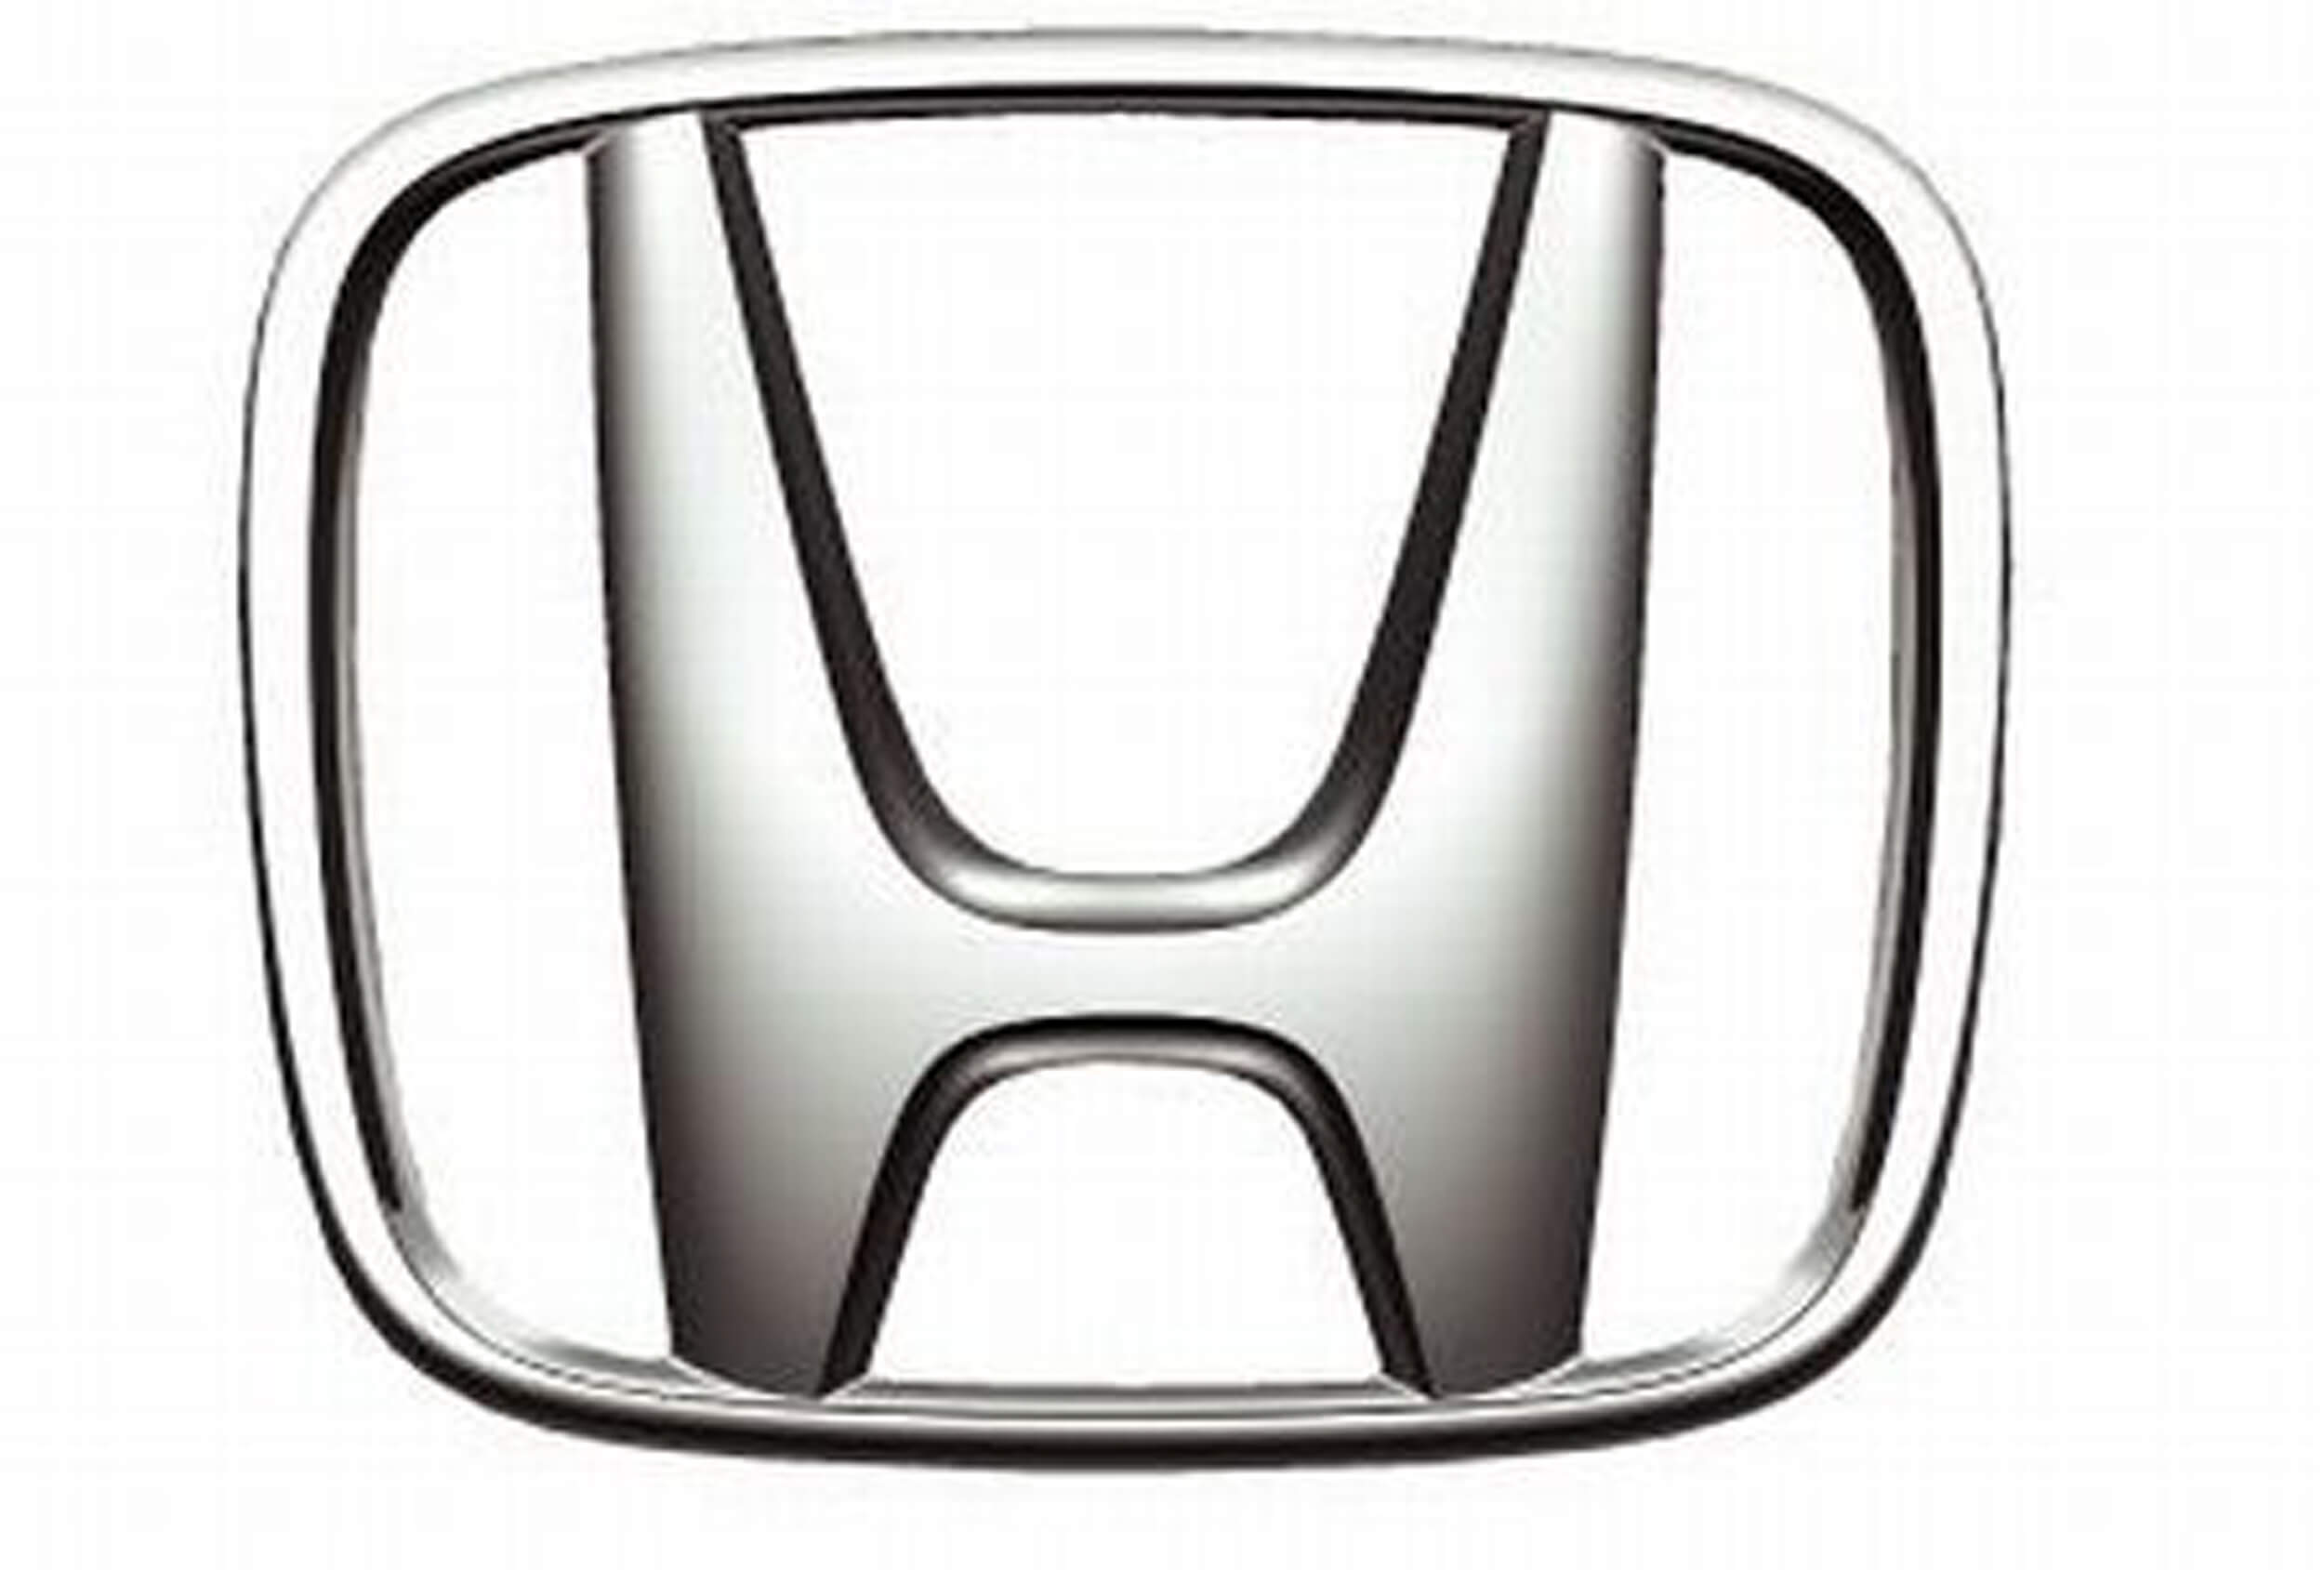 Honda auto parts wholesaler (Copy)